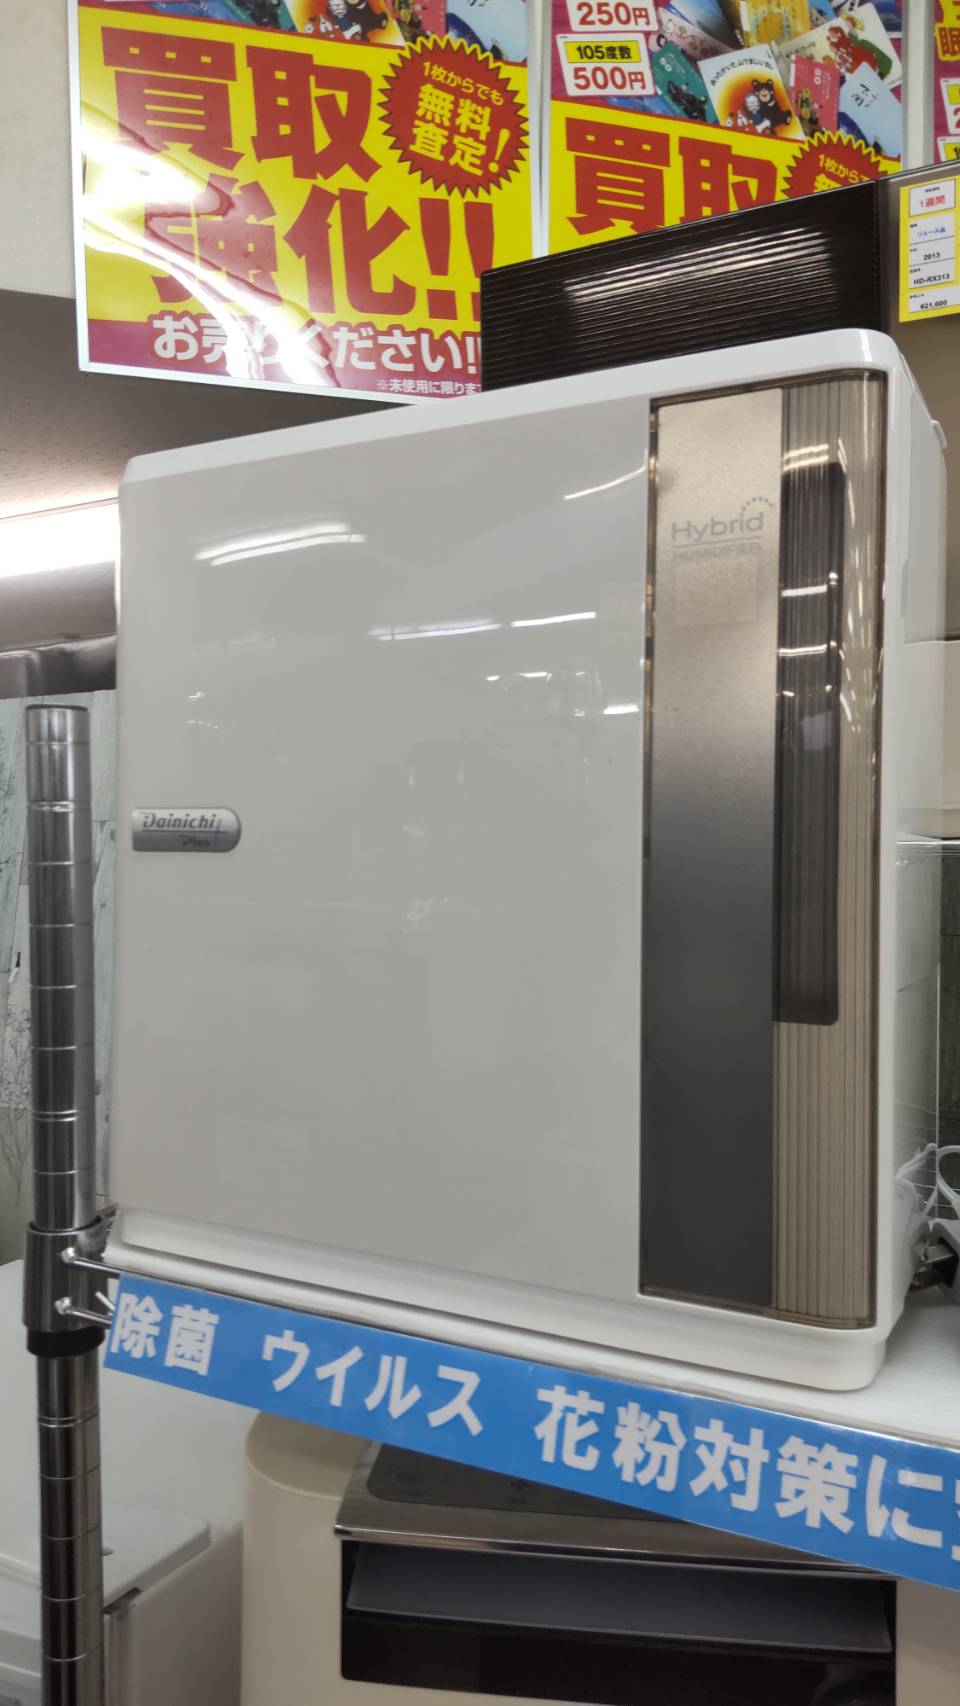 【DAINICHI ダイニチ 2.4L ハイブリッド式 加湿器 2017年製 HD-3016(W)】を買取りさせて頂きました！⭐福岡市 早良区 リサイクルショップ リサイクルマート原店⭐ - リサイクルマートは現在冷蔵庫の買取、家具の買取強化中です！お気軽にお問い合わせください。